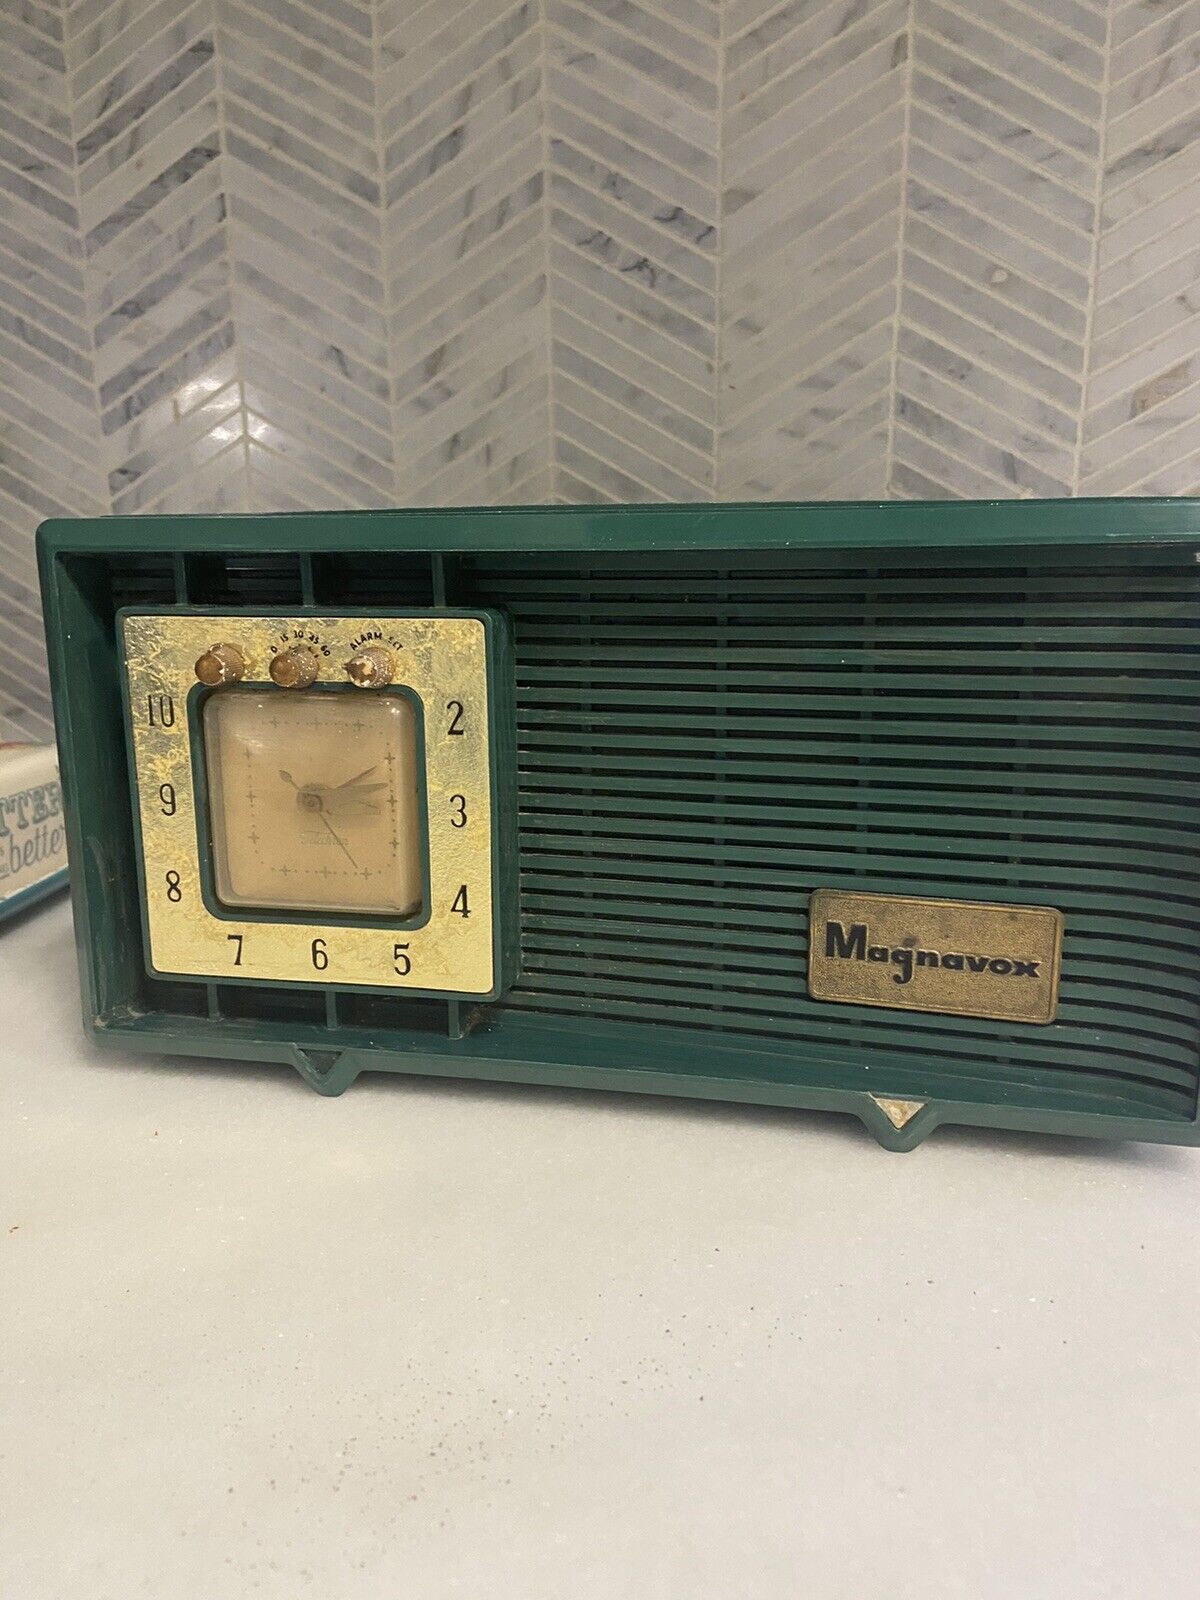 magnavox vintage(1959) AM radio